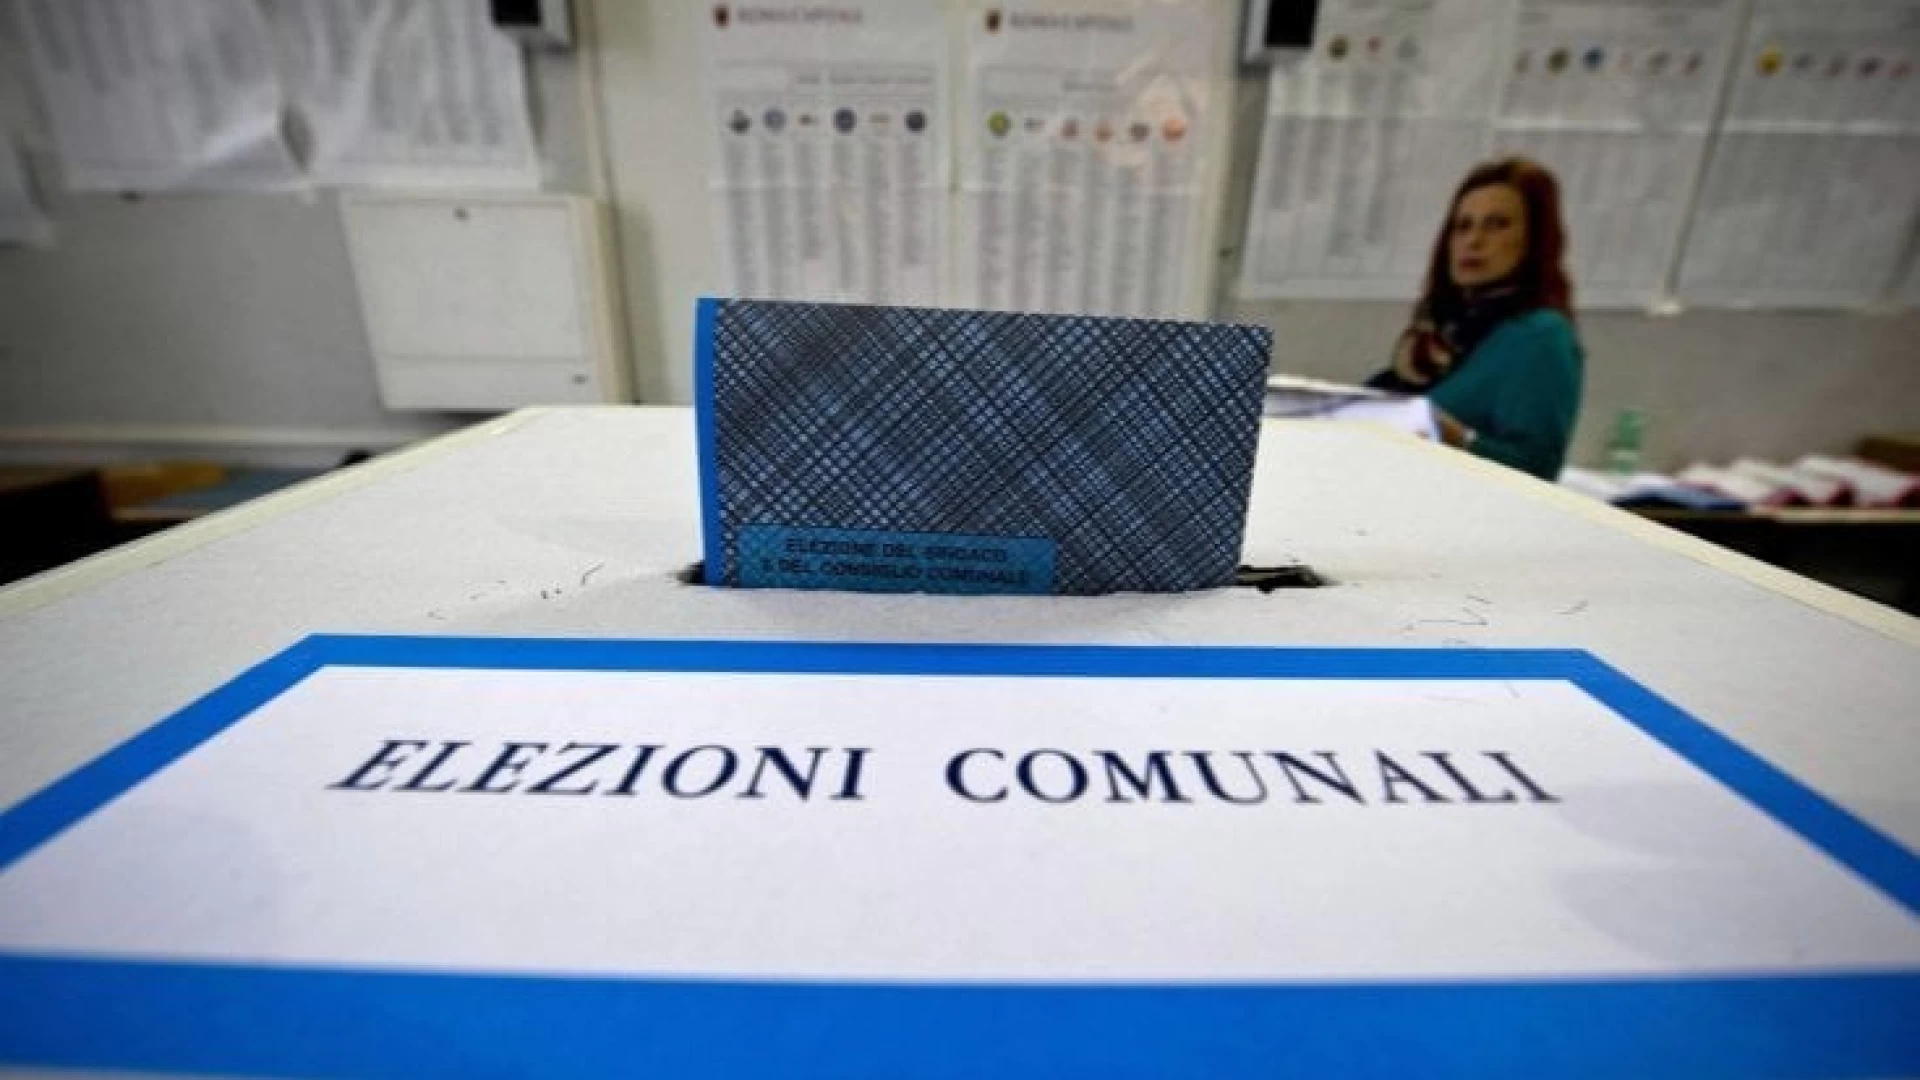 Valle del Volturno: sfide elettorali emozionanti il prossimo 8-9 giugno. L’analisi finale dopo la presentazione delle liste.